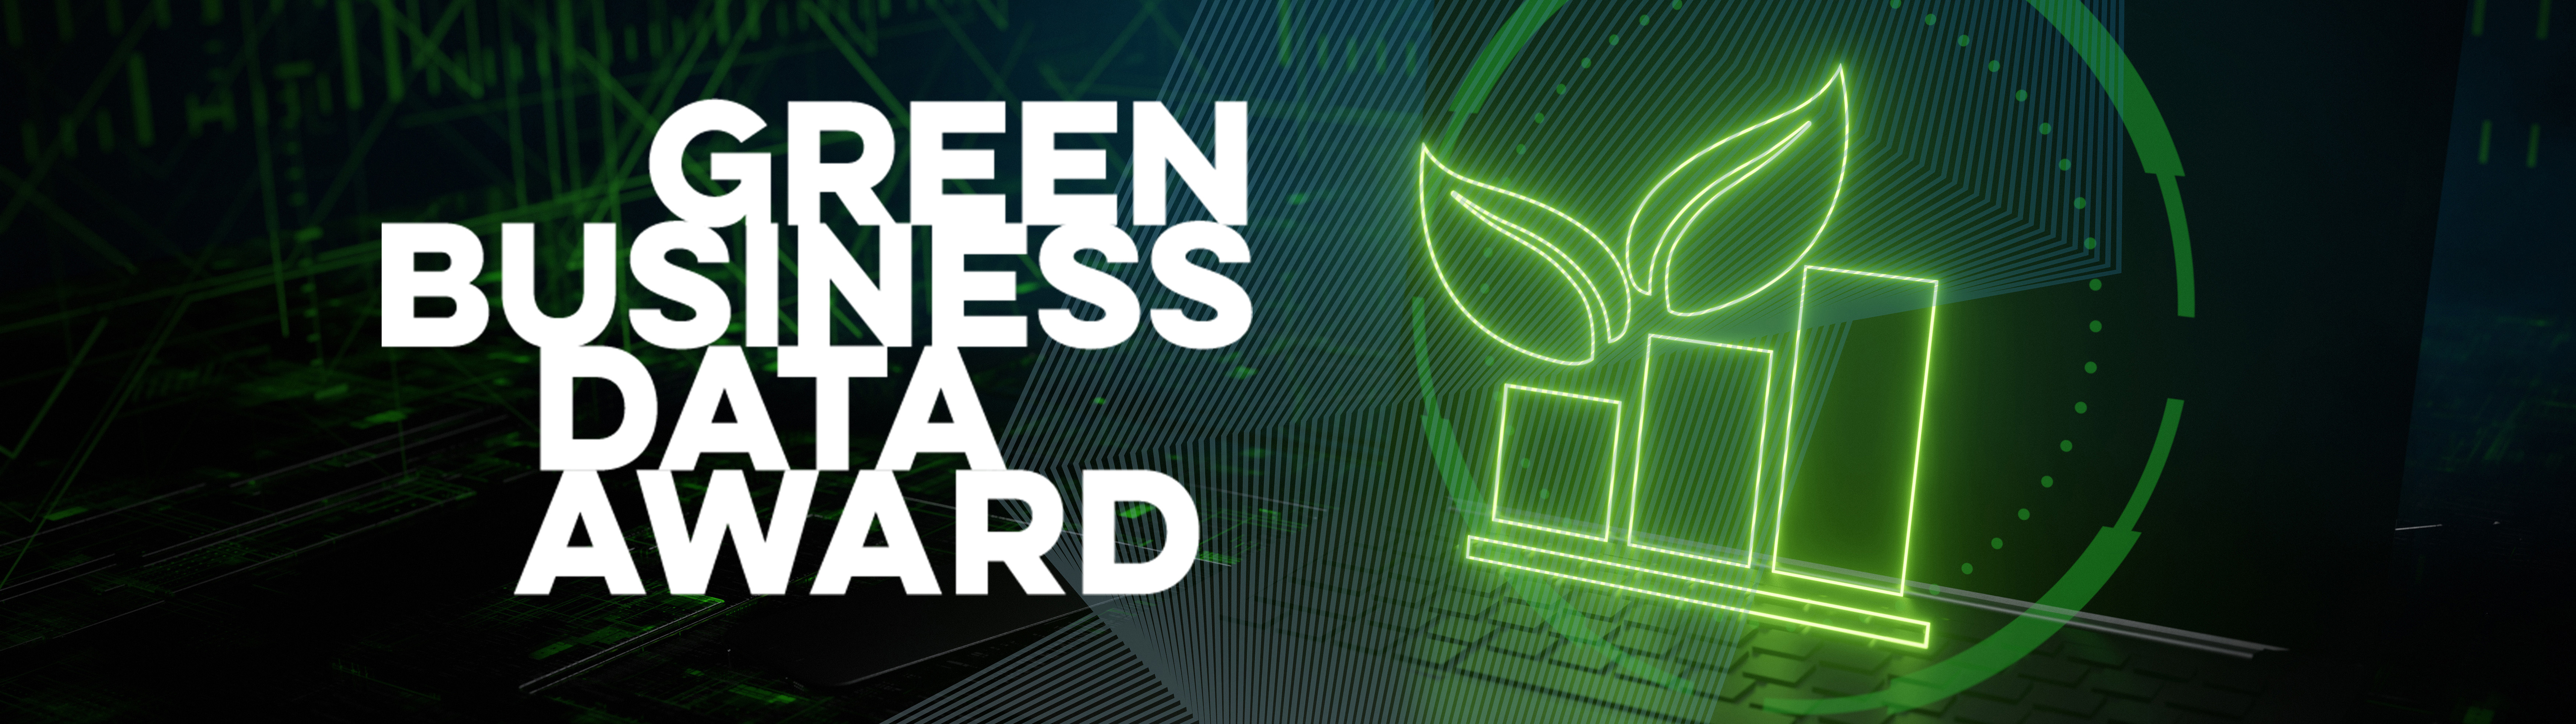 Green Business Data Award